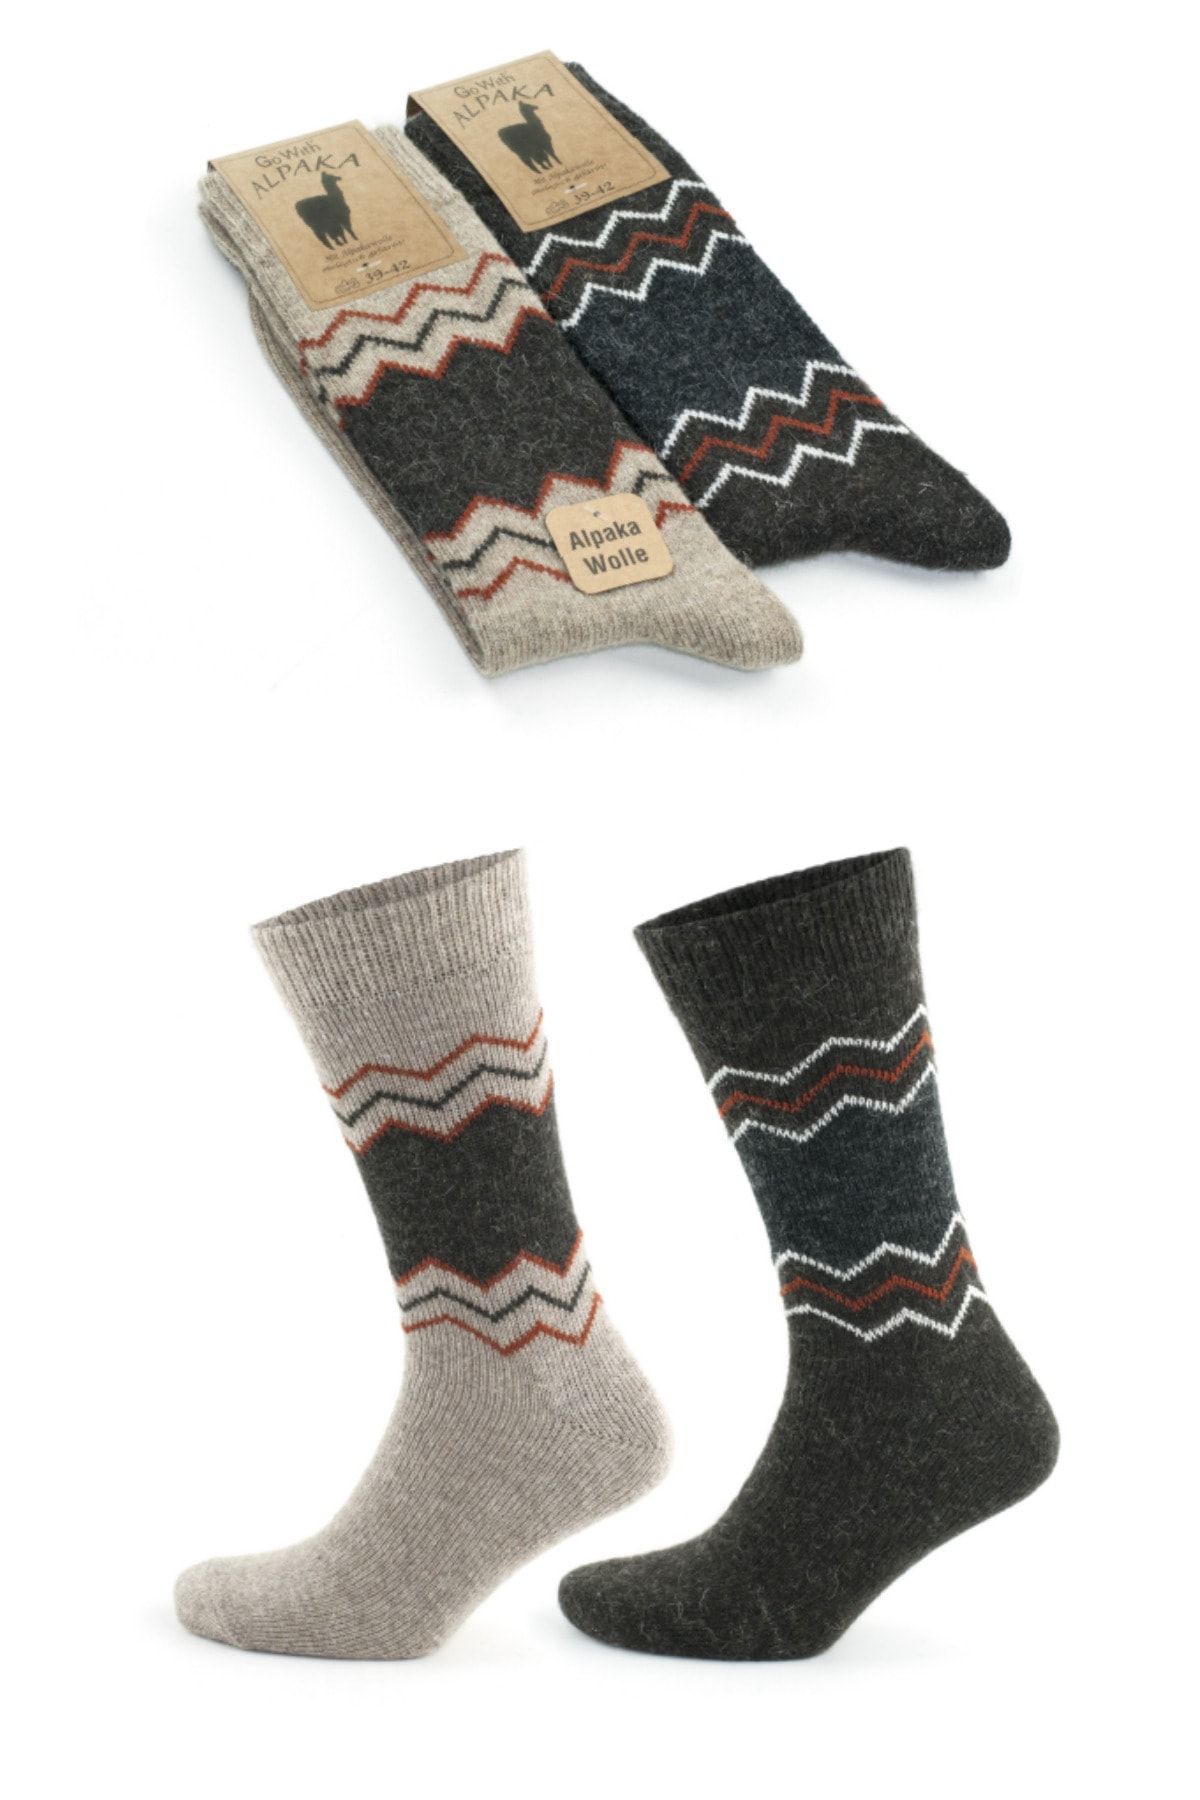 socksbox Alpaka Doğal Yün Termal Etkili Zigzag Desen Kışlık Çorap 2 Çift